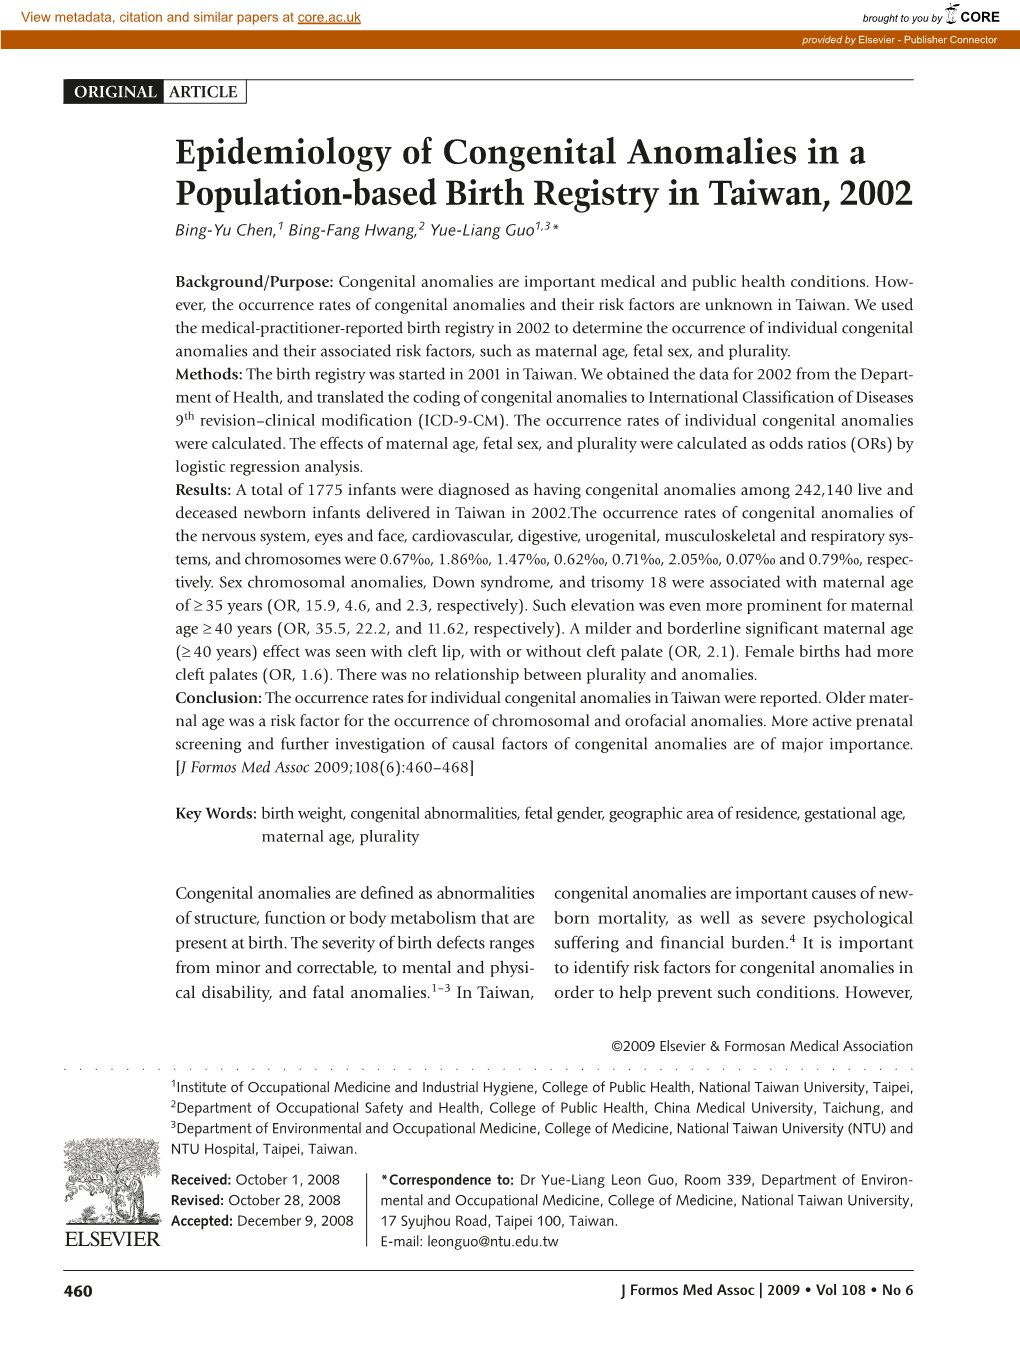 Epidemiology of Congenital Anomalies in a Population-Based Birth Registry in Taiwan, 2002 Bing-Yu Chen,1 Bing-Fang Hwang,2 Yue-Liang Guo1,3*